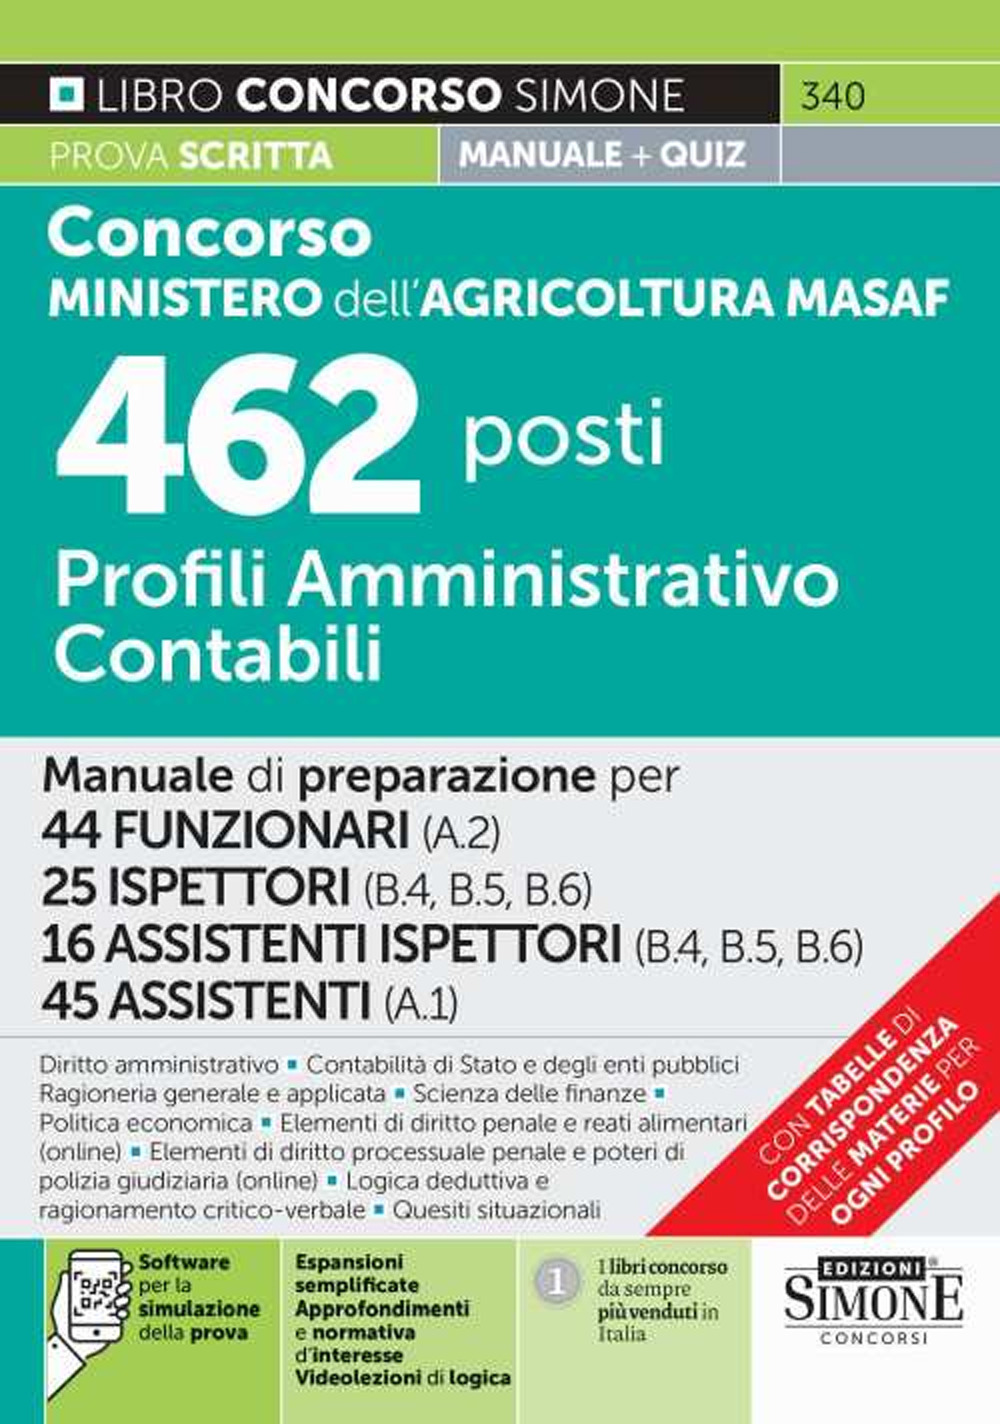 Concorso Ministero dell'agricoltura MASAF 462 posti profili amministrativo contabili. Manuale di preparazione per 44 funzionari (A.2)-25 ispettori (B.4 - B.5 - B.6)-16 assistenti ispettori (B.4 - B.5 - B.6)-45 assistenti (A.1). Con software di simulazione